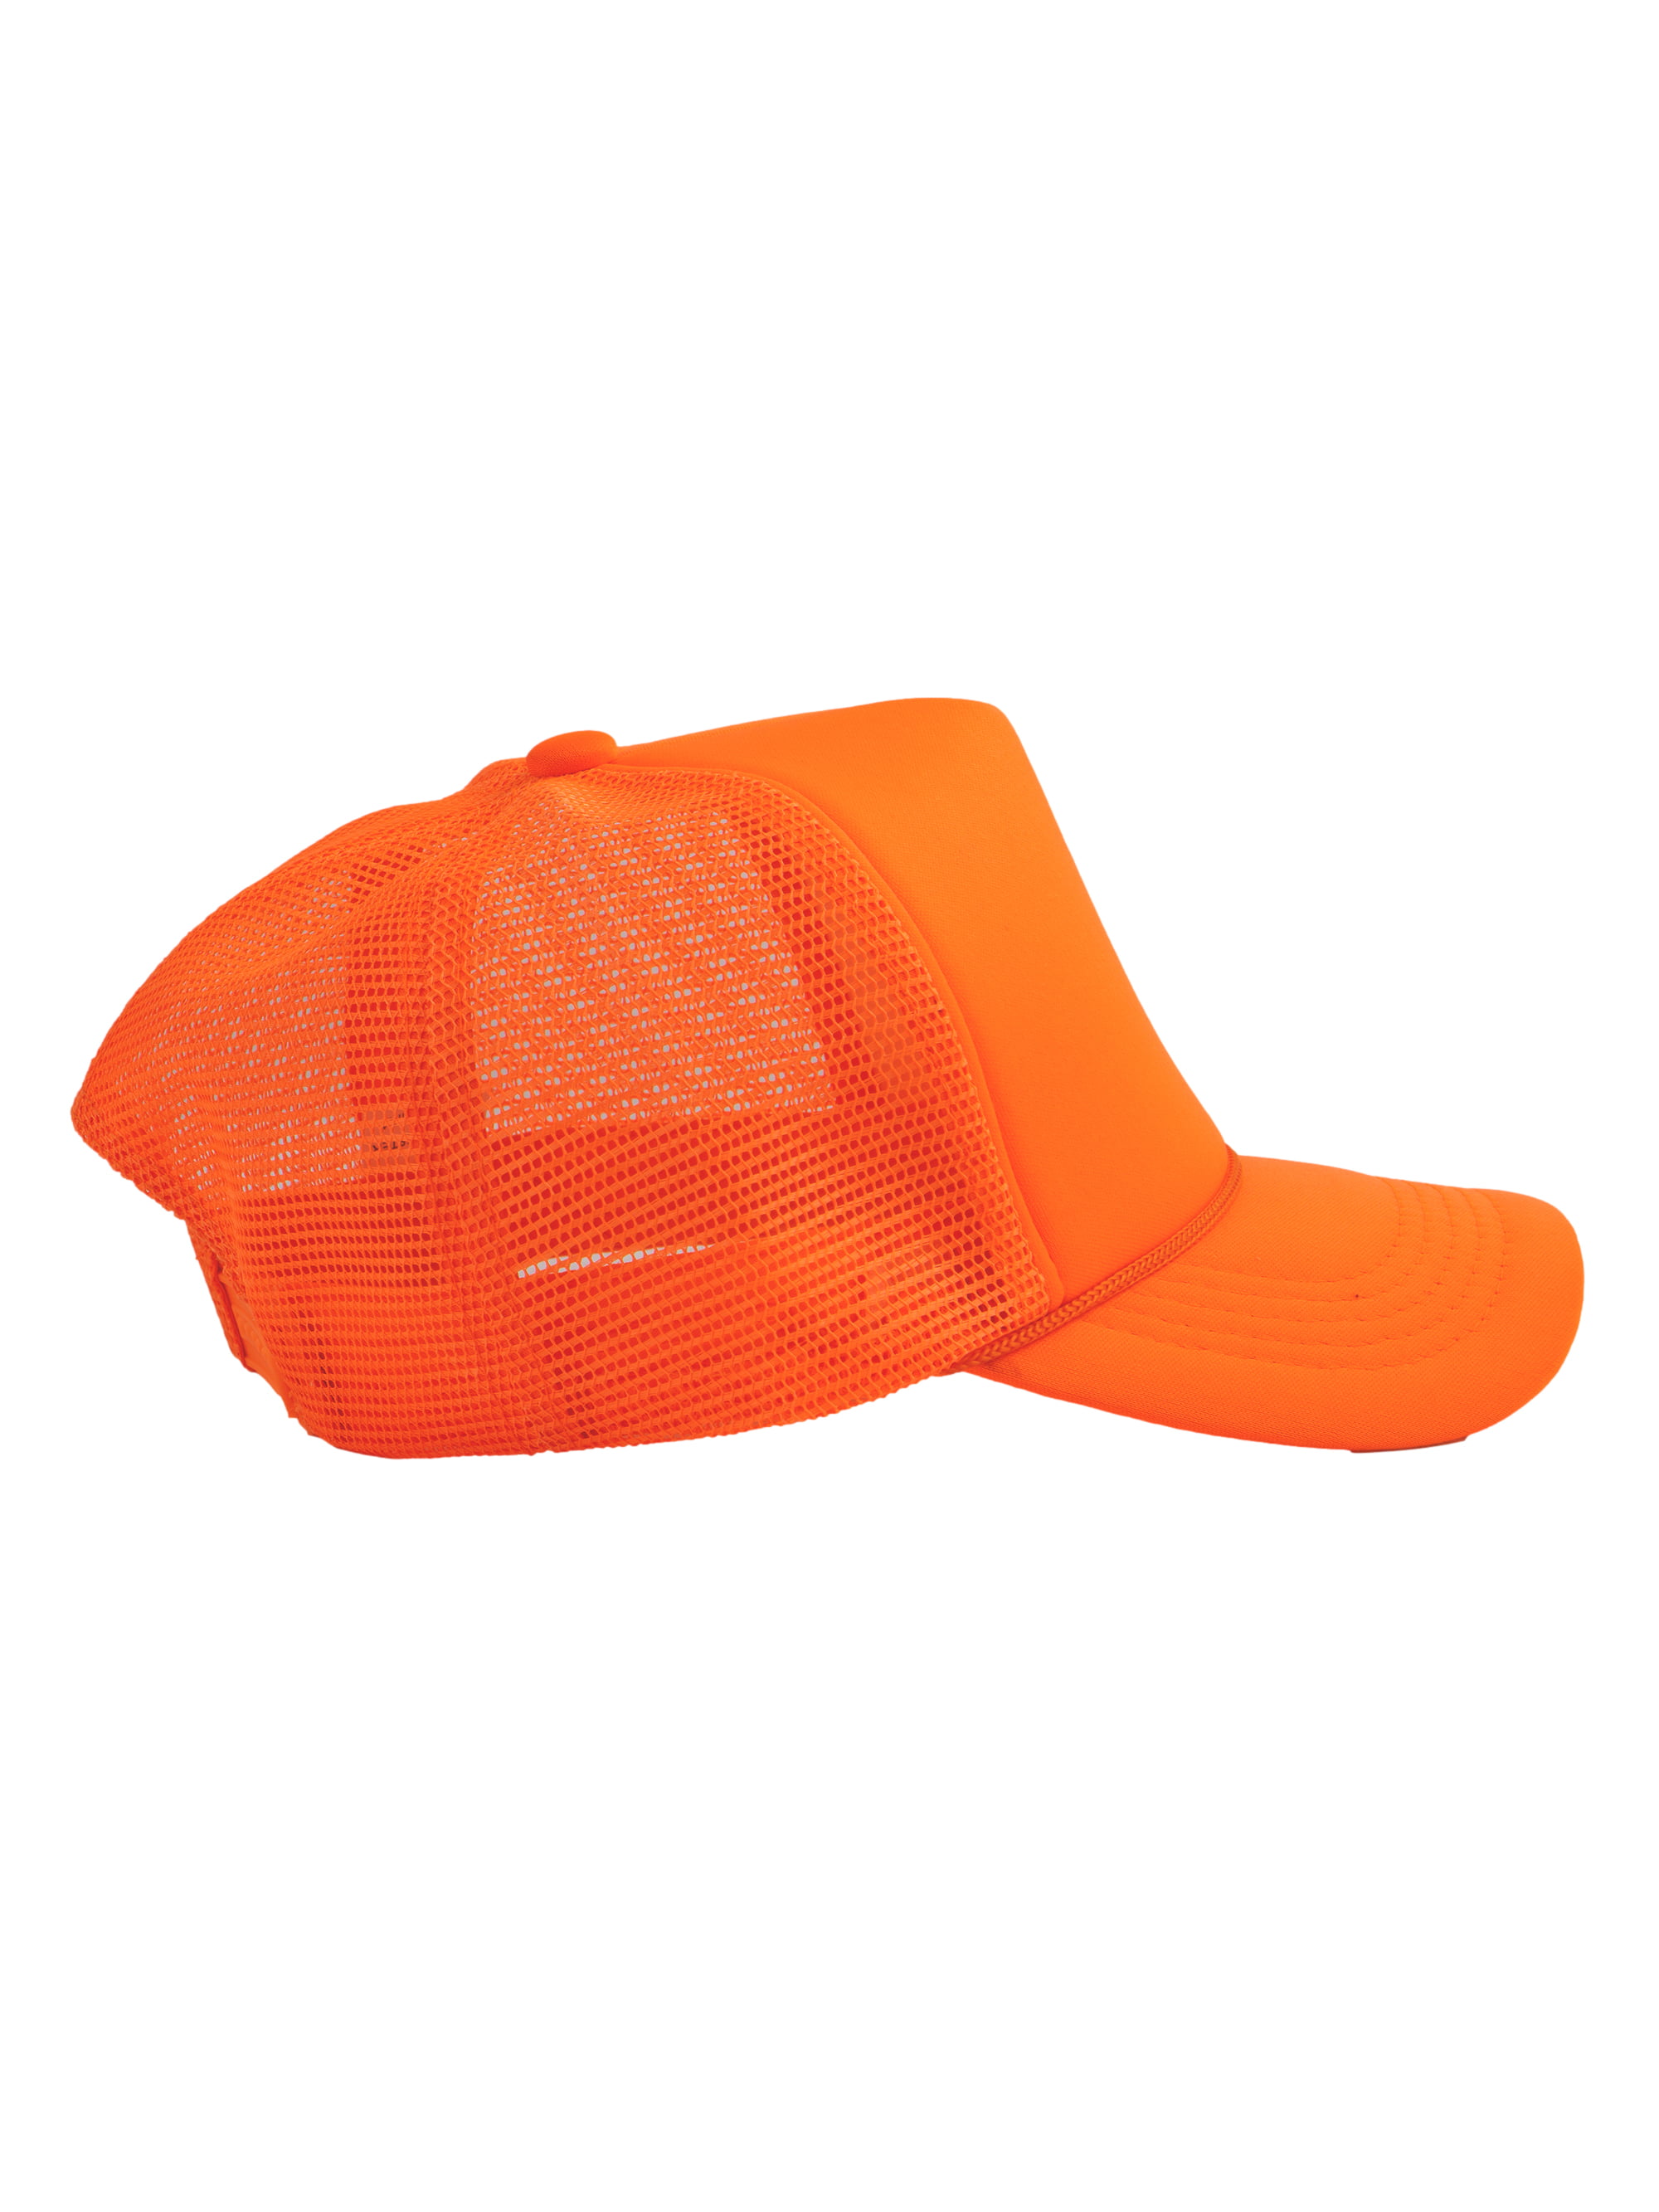 Hat Orange Top Mens Neon Mesh Trucker - Hats Blank Foam Snapback Headwear Trucker